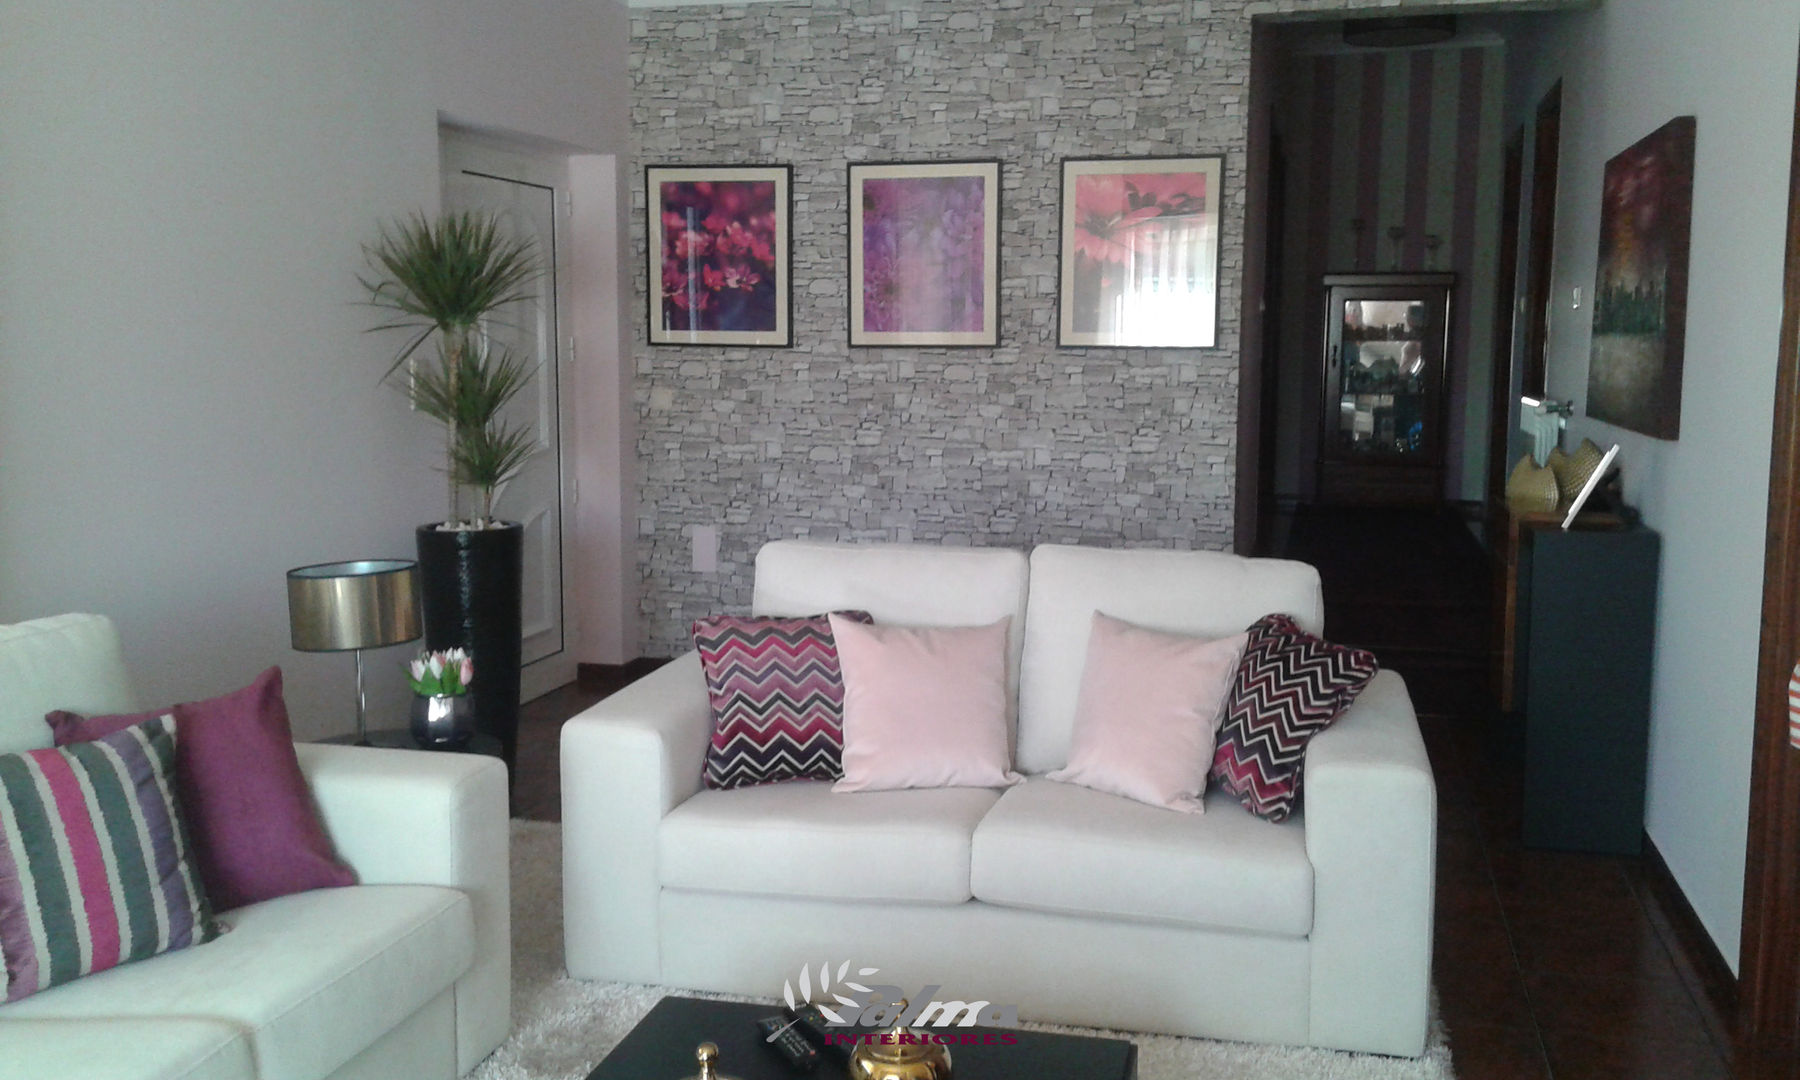 Sala SPRING, Palma Interiores Palma Interiores Salas de estar modernas sofá,almofadas,plantas de interior,quadros,papel de parede,Sofás e divãs